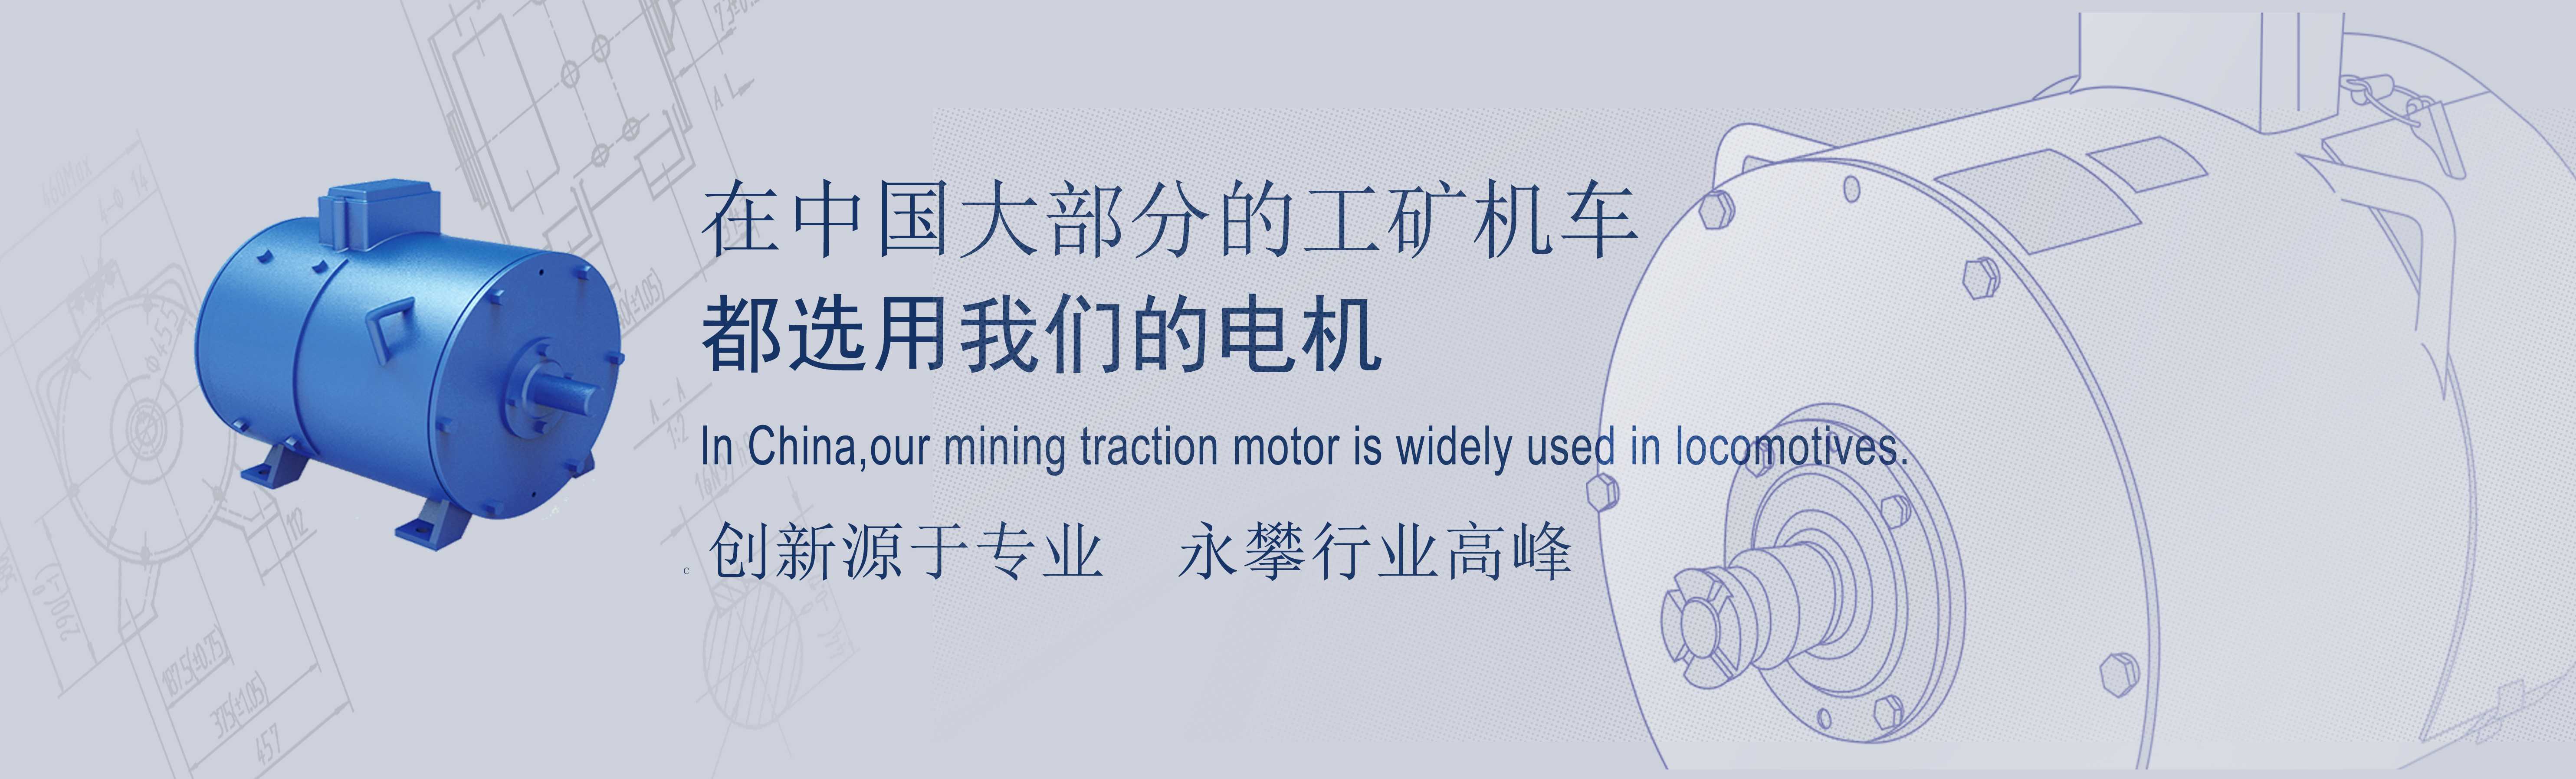 内蒙�古客户采购了一台5吨锂电池电机车